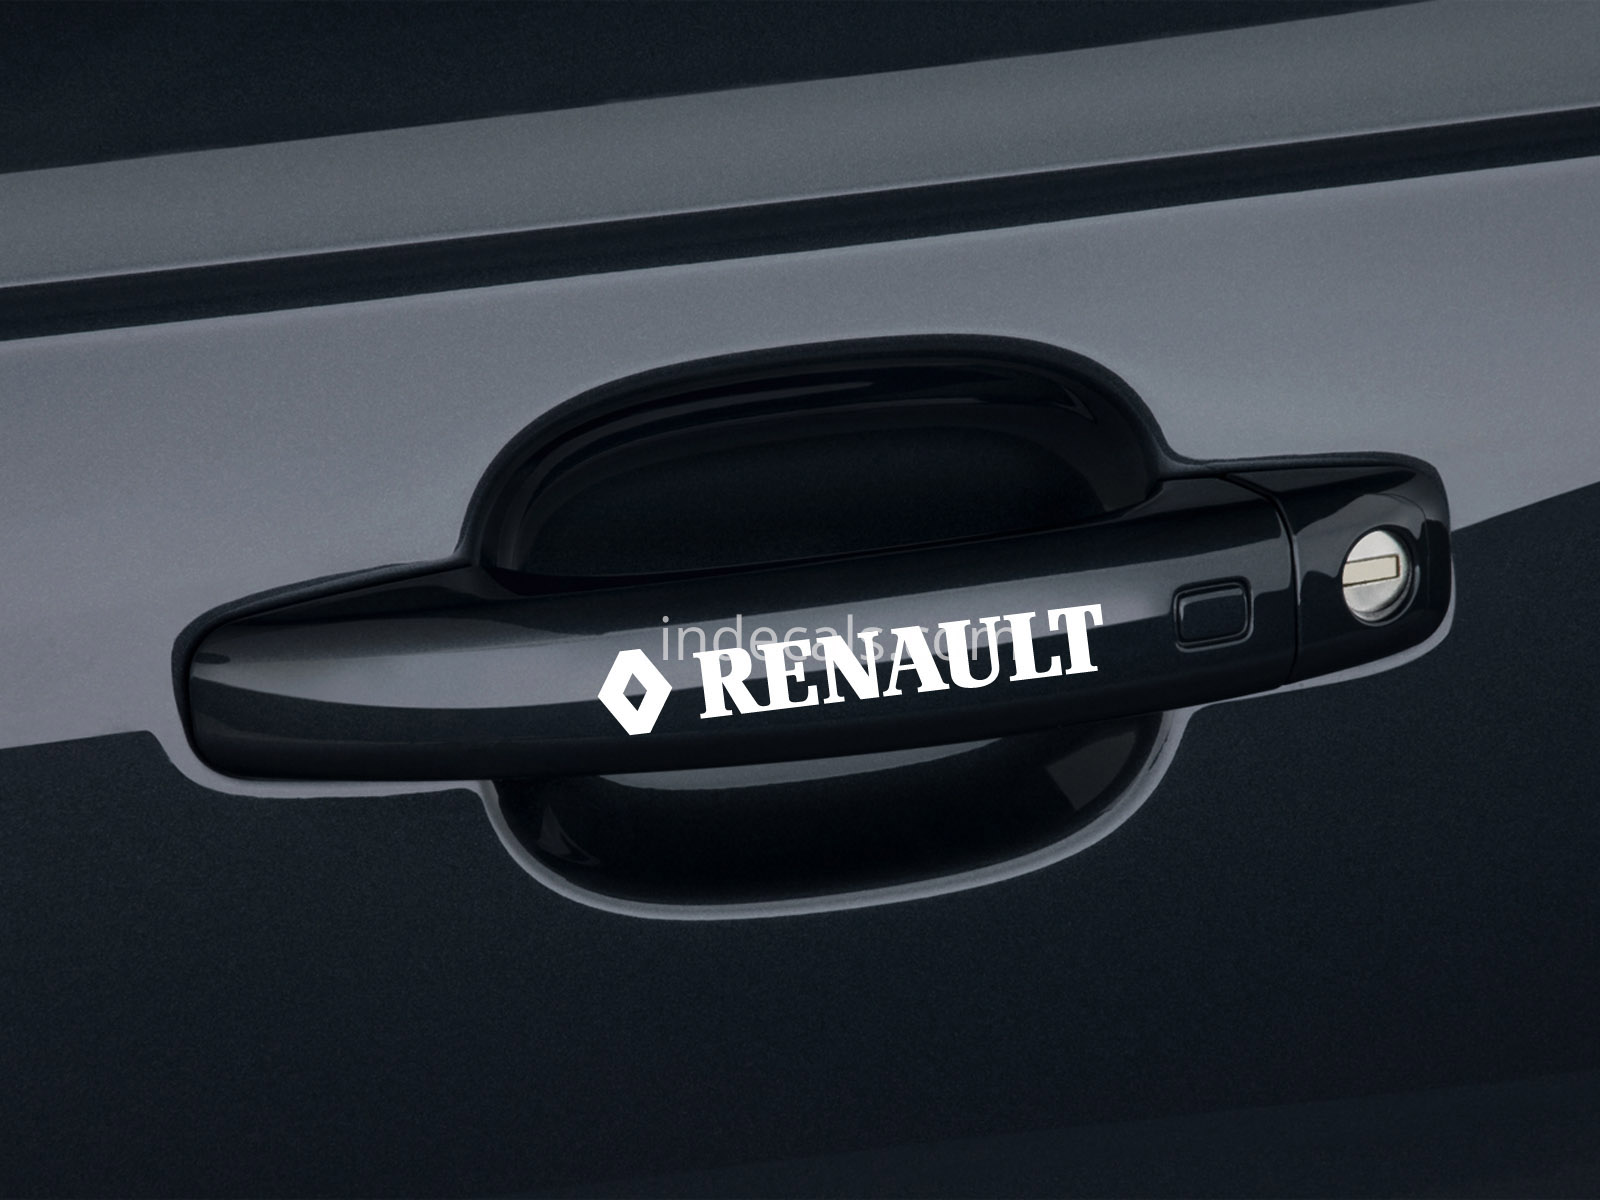 6 x Renault Stickers for Door Handles - White